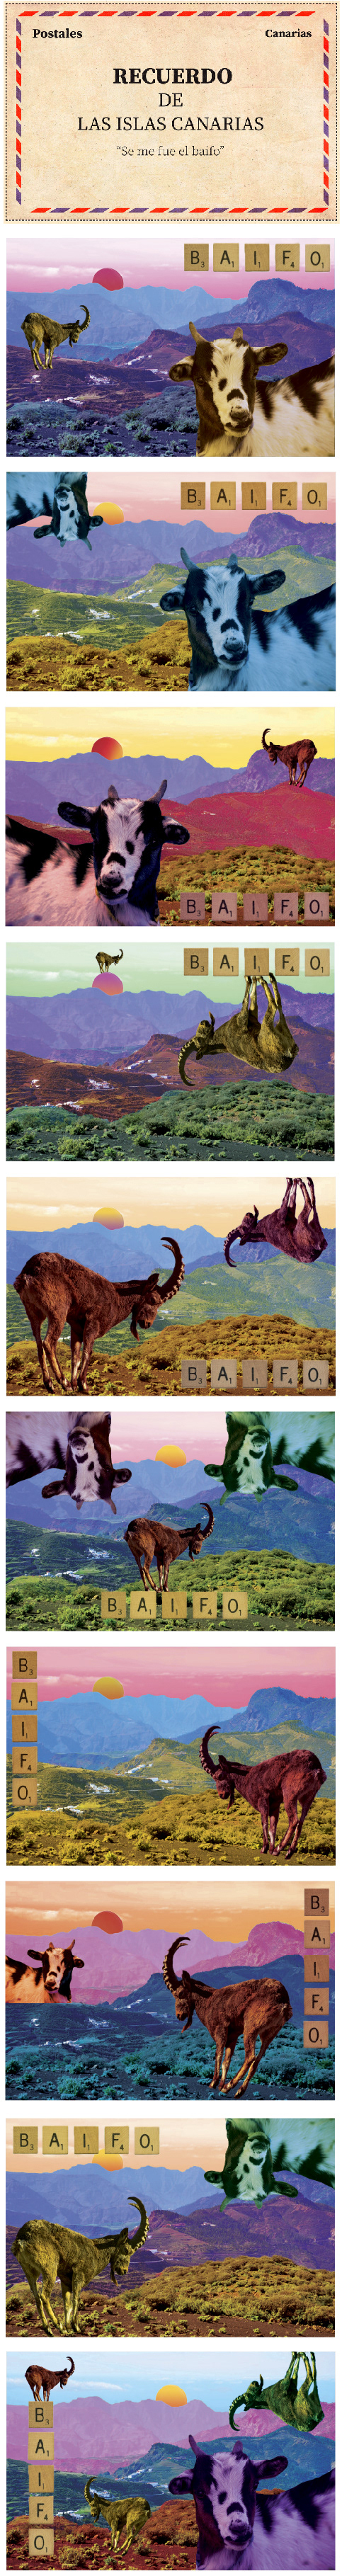 baifo collage color design Gran Canaria spain coat cute graphic design  postal